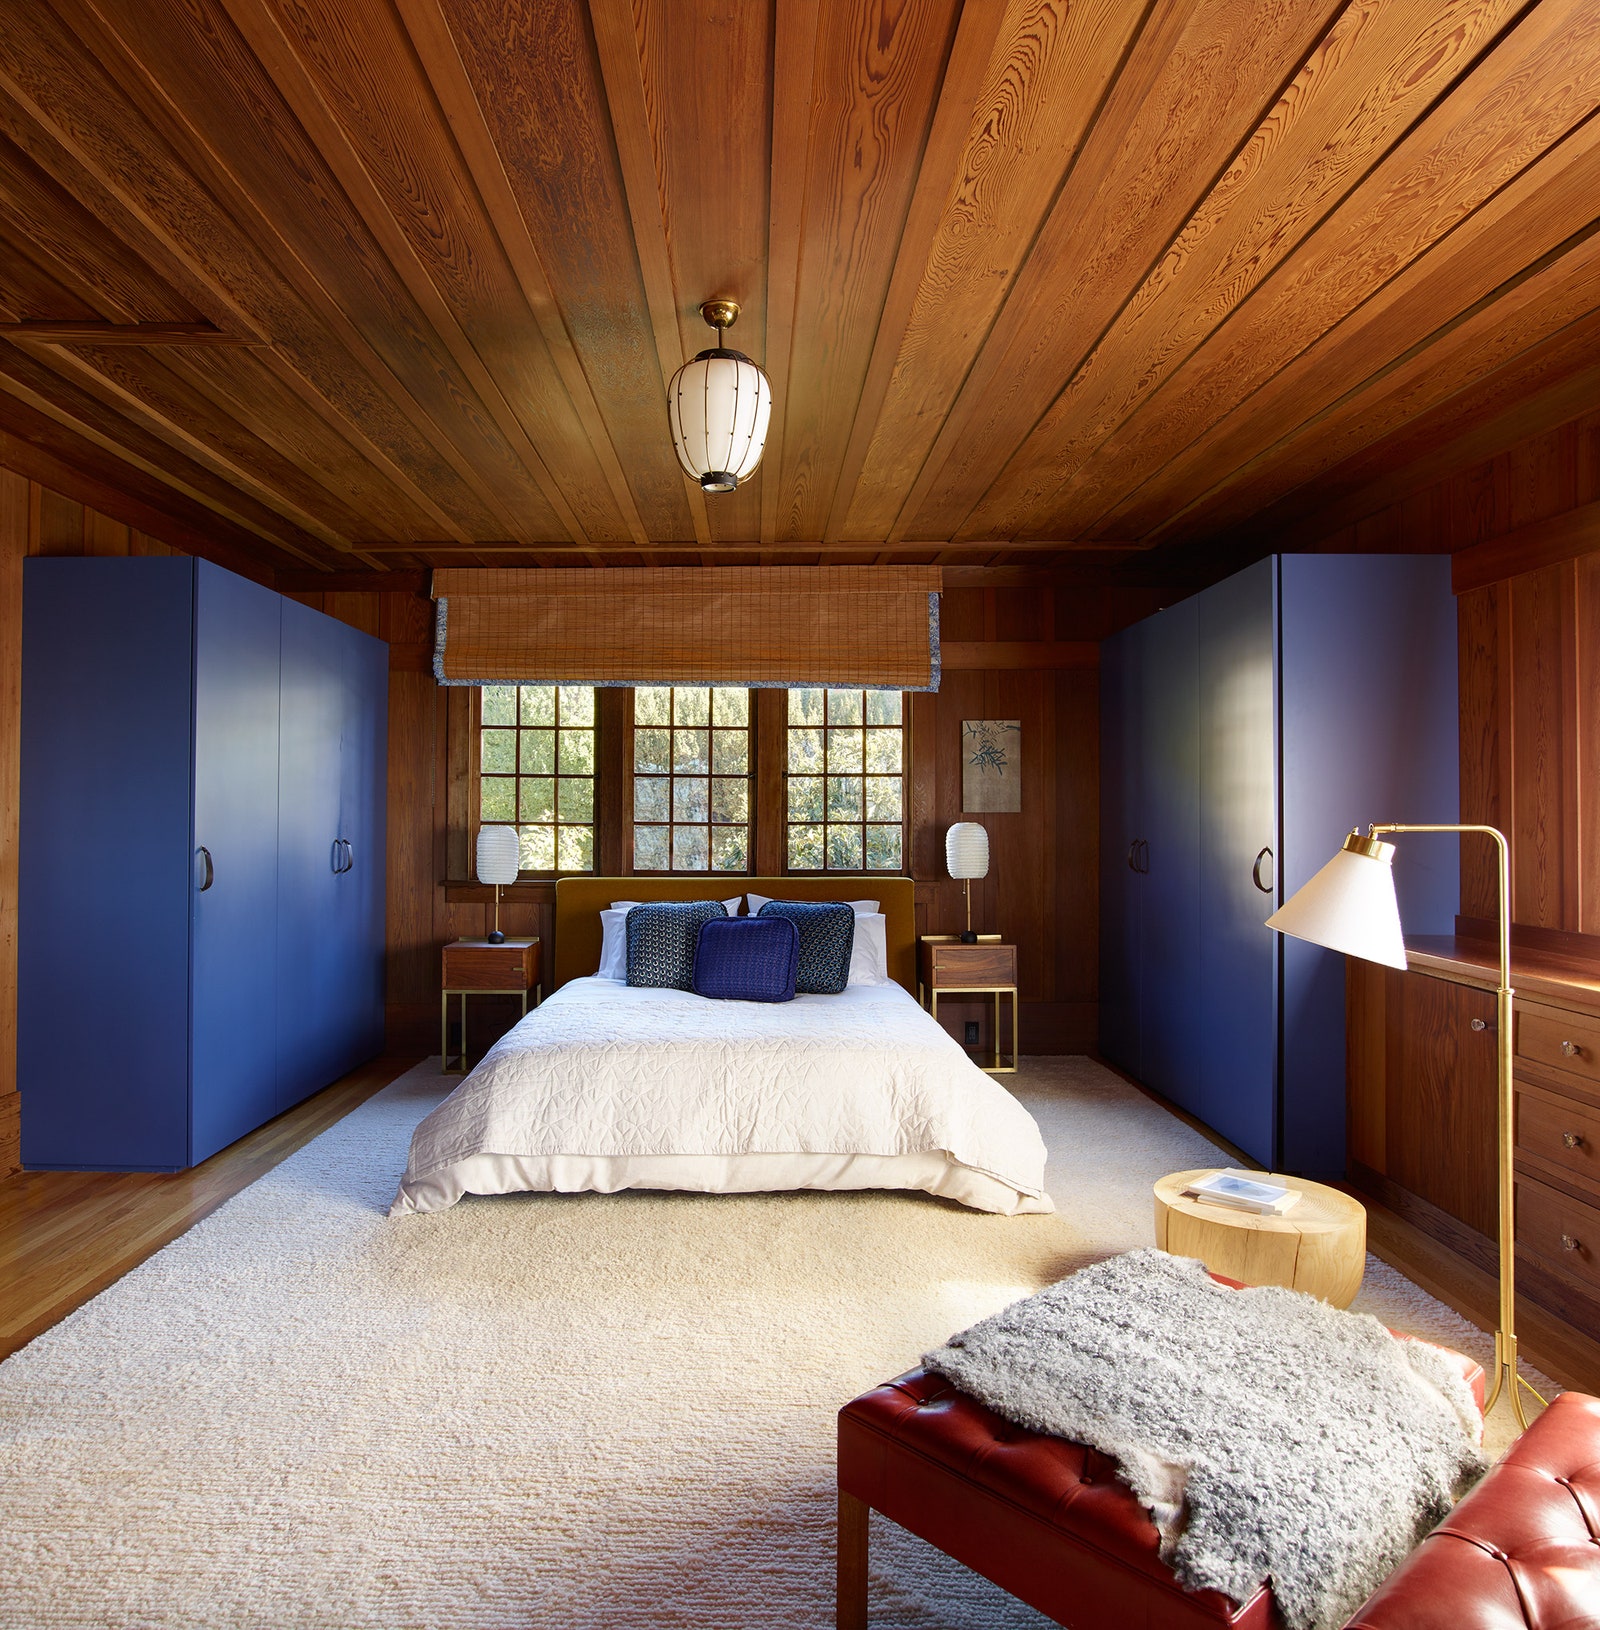 Хозяйская спальня. Синие гардеробы Henrybuilt ковер Christopher Farr прикроватные столики сделаны по проекту бюро Commune.